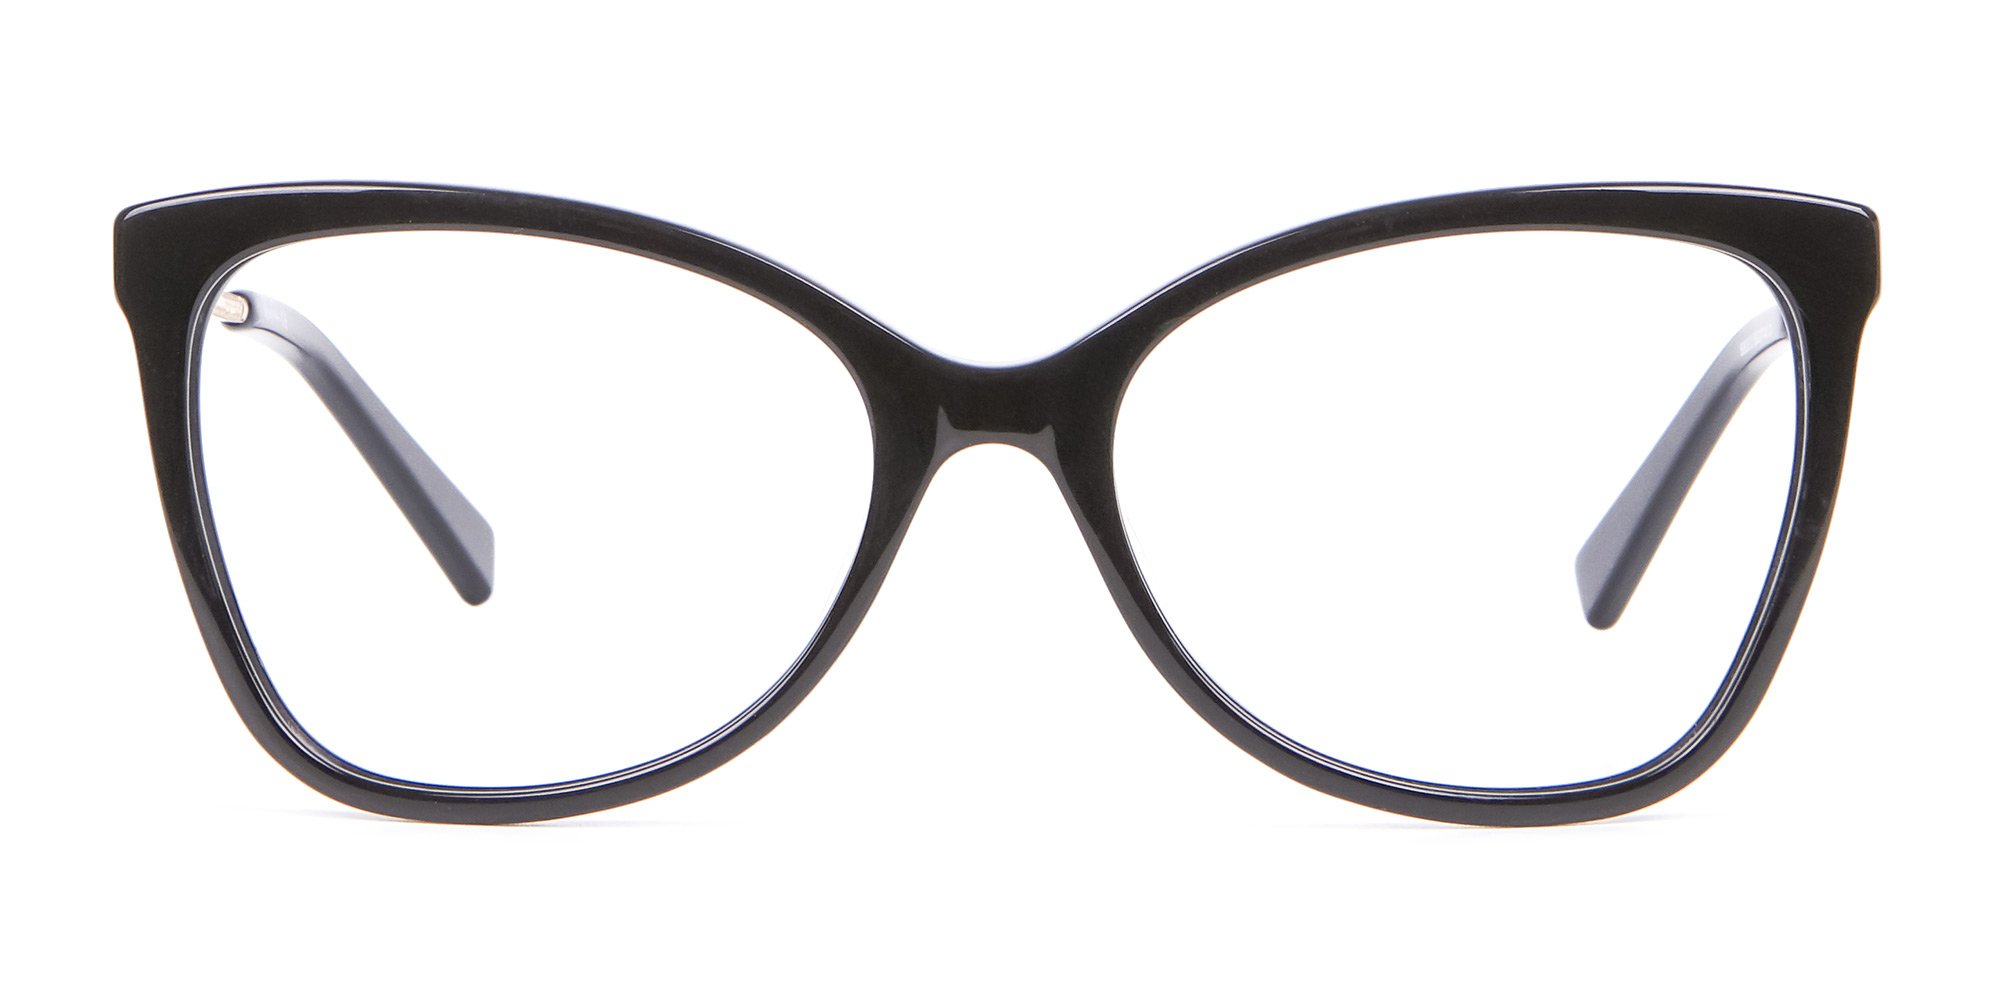 classic black cat eye glasses